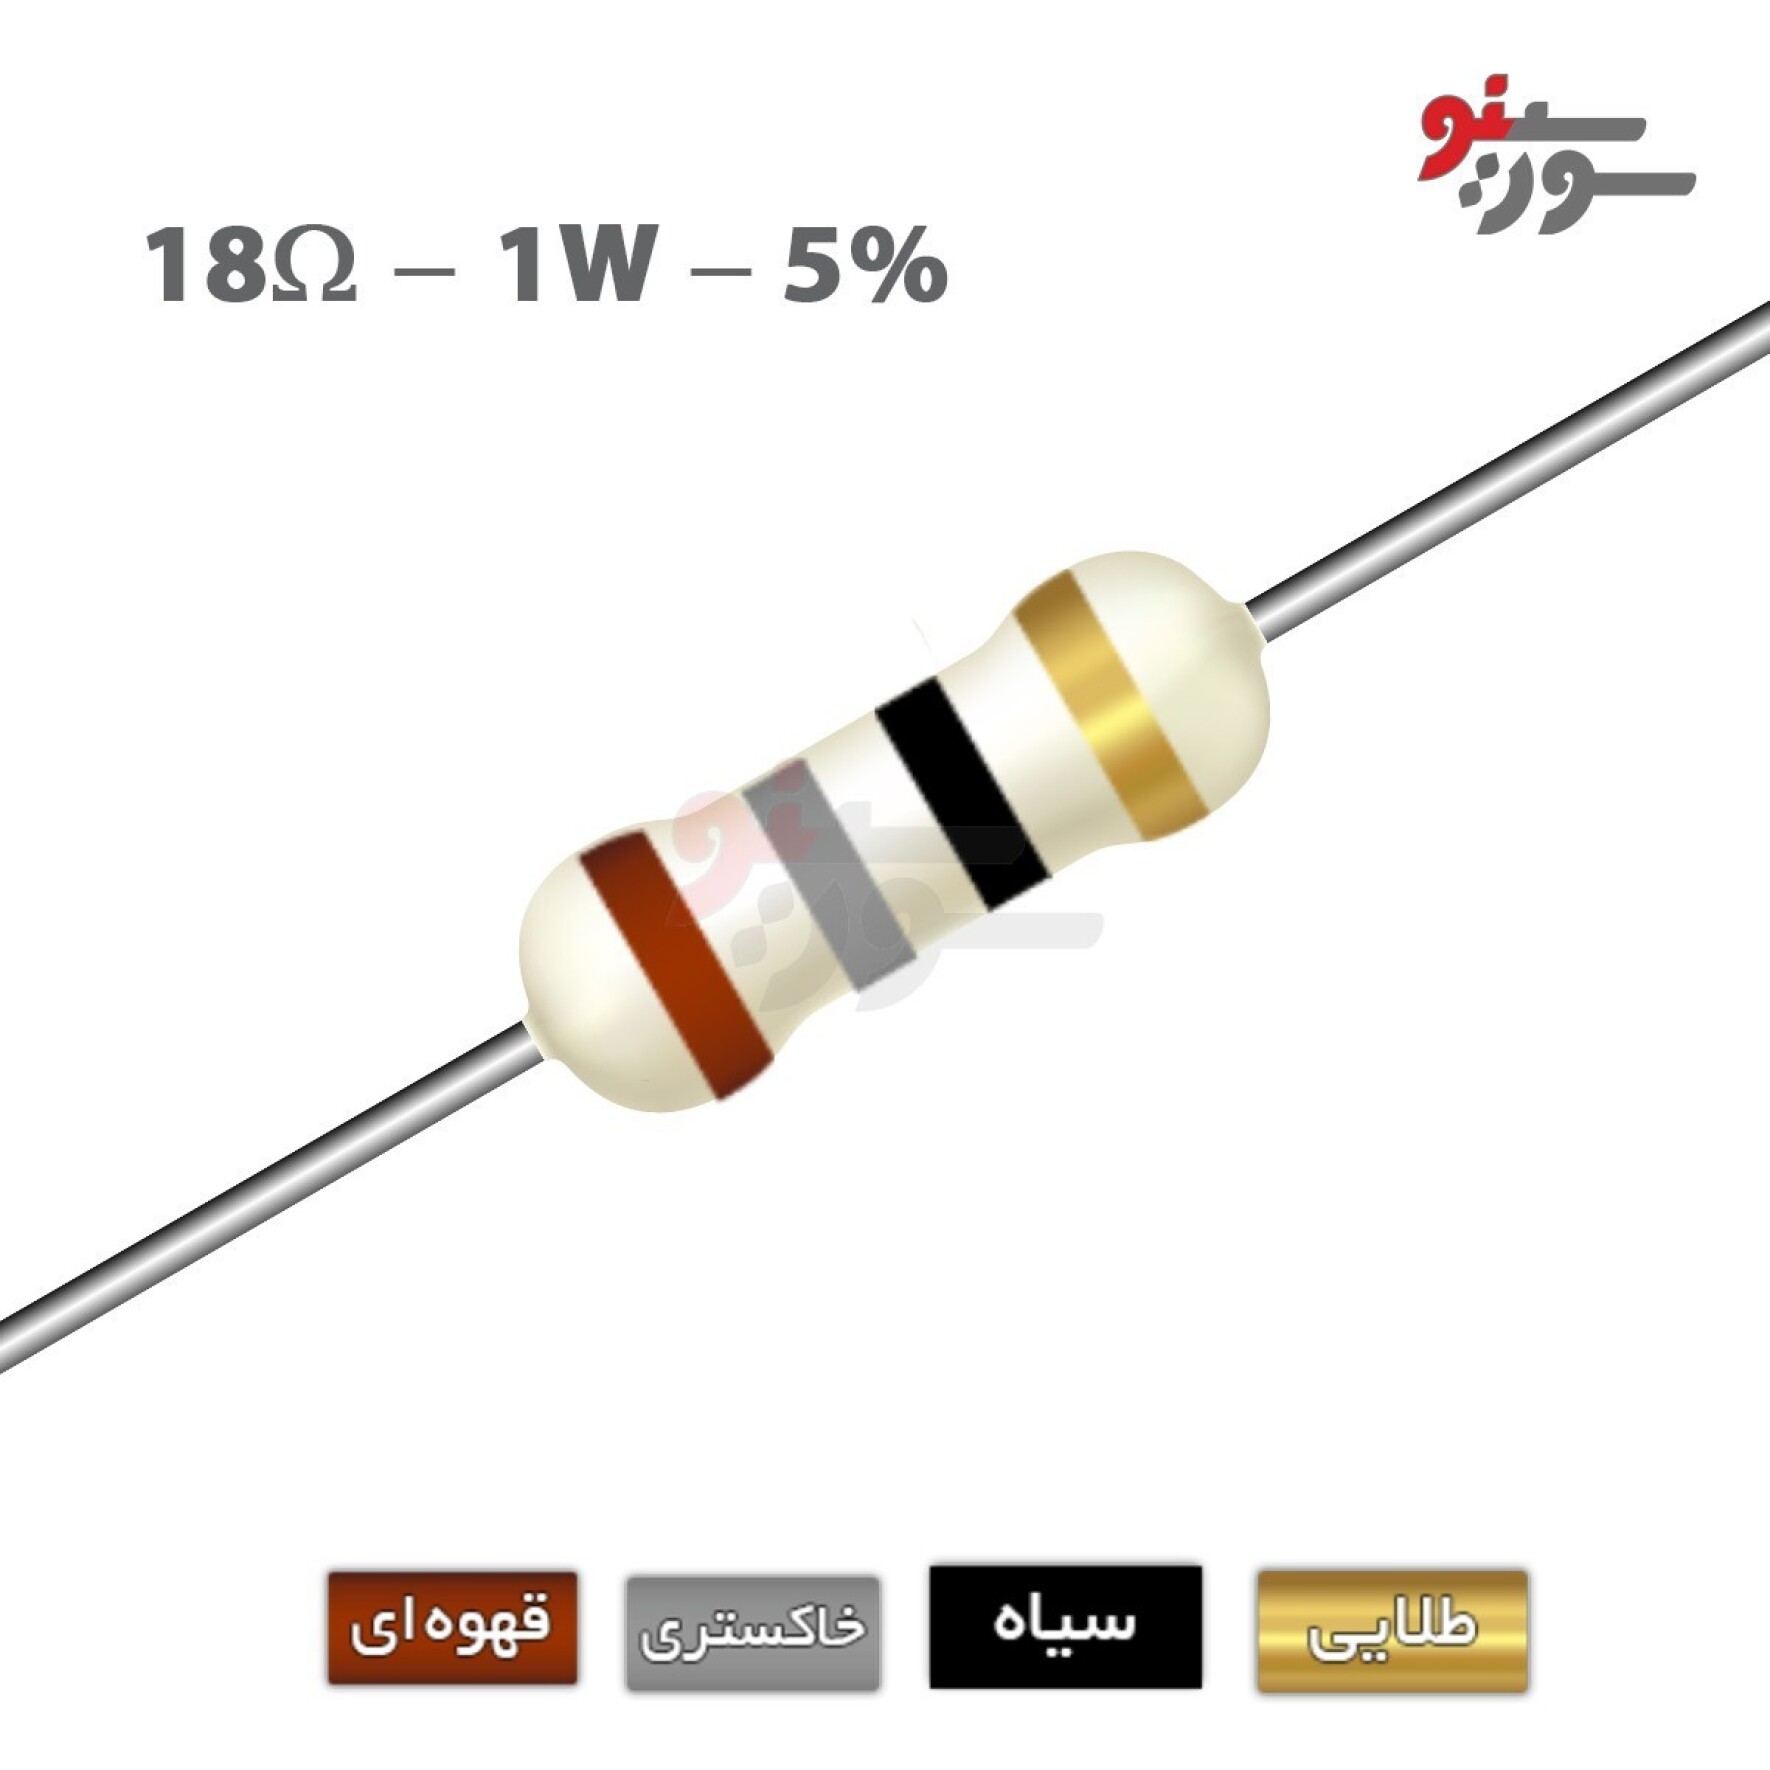 مقاومت 18 اهم 1 وات (18R-1W-5%)